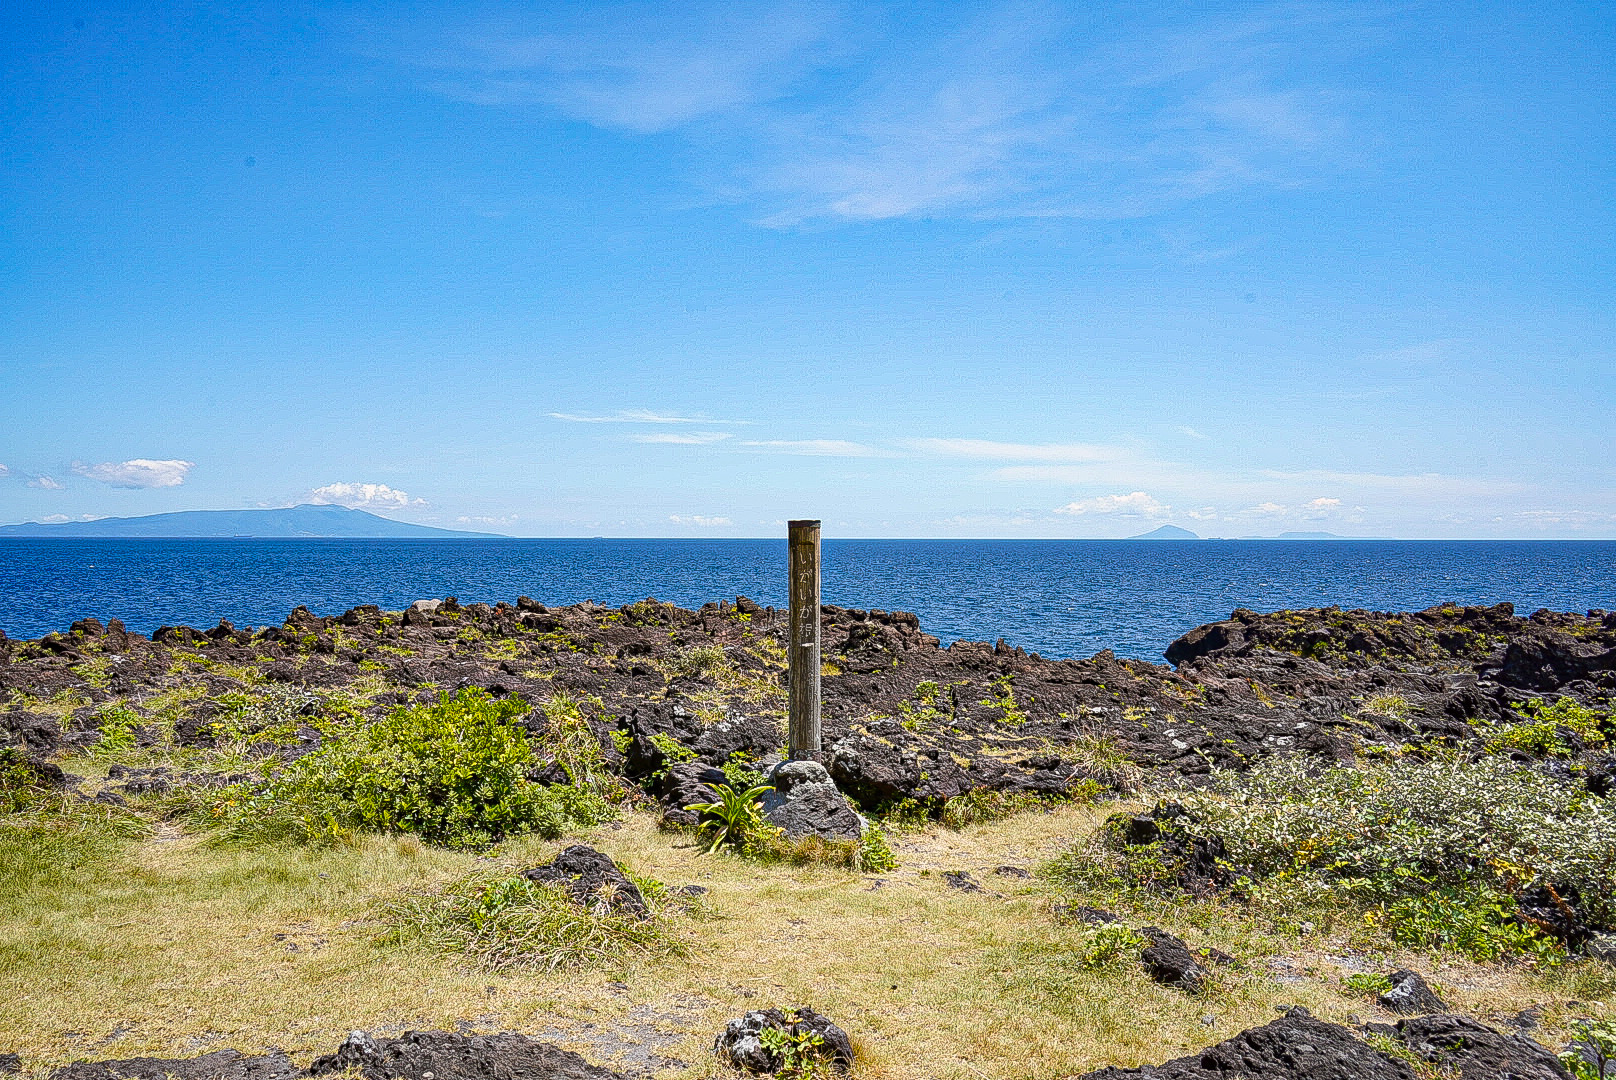 いがいが根には無料の駐車場もあり、観光客は少なく、釣り人が多い印象です。水平線上には伊豆諸島が見渡せます。